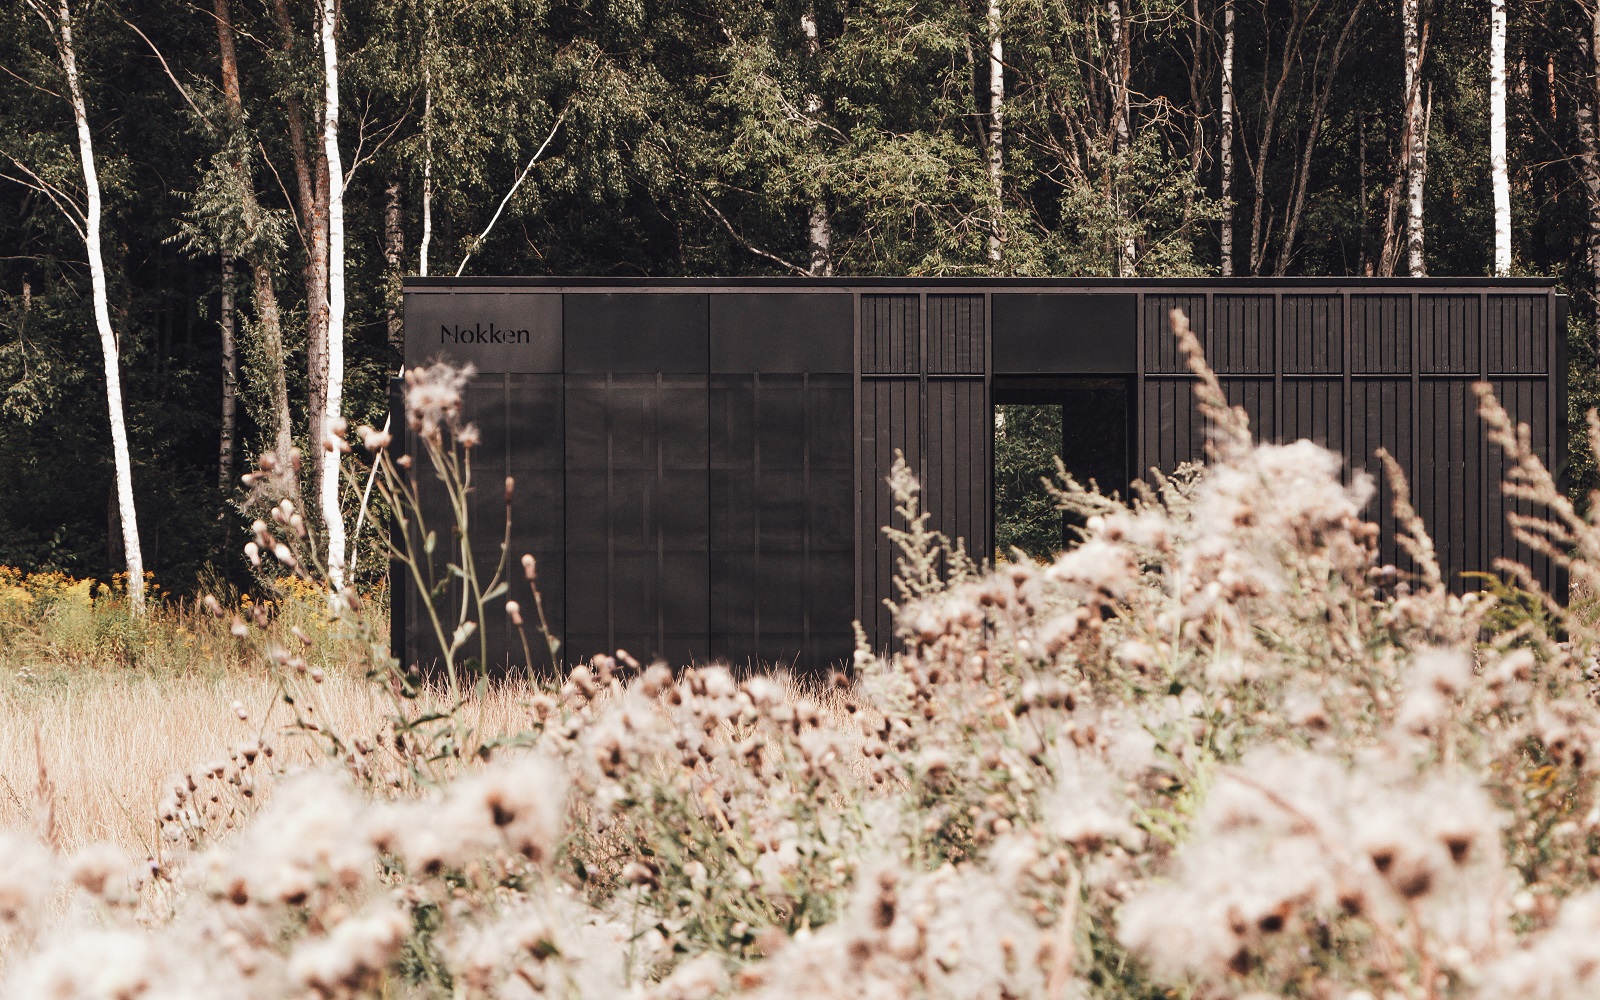 exterior of Nokken cabin by Aylott Van Tromp, in a field